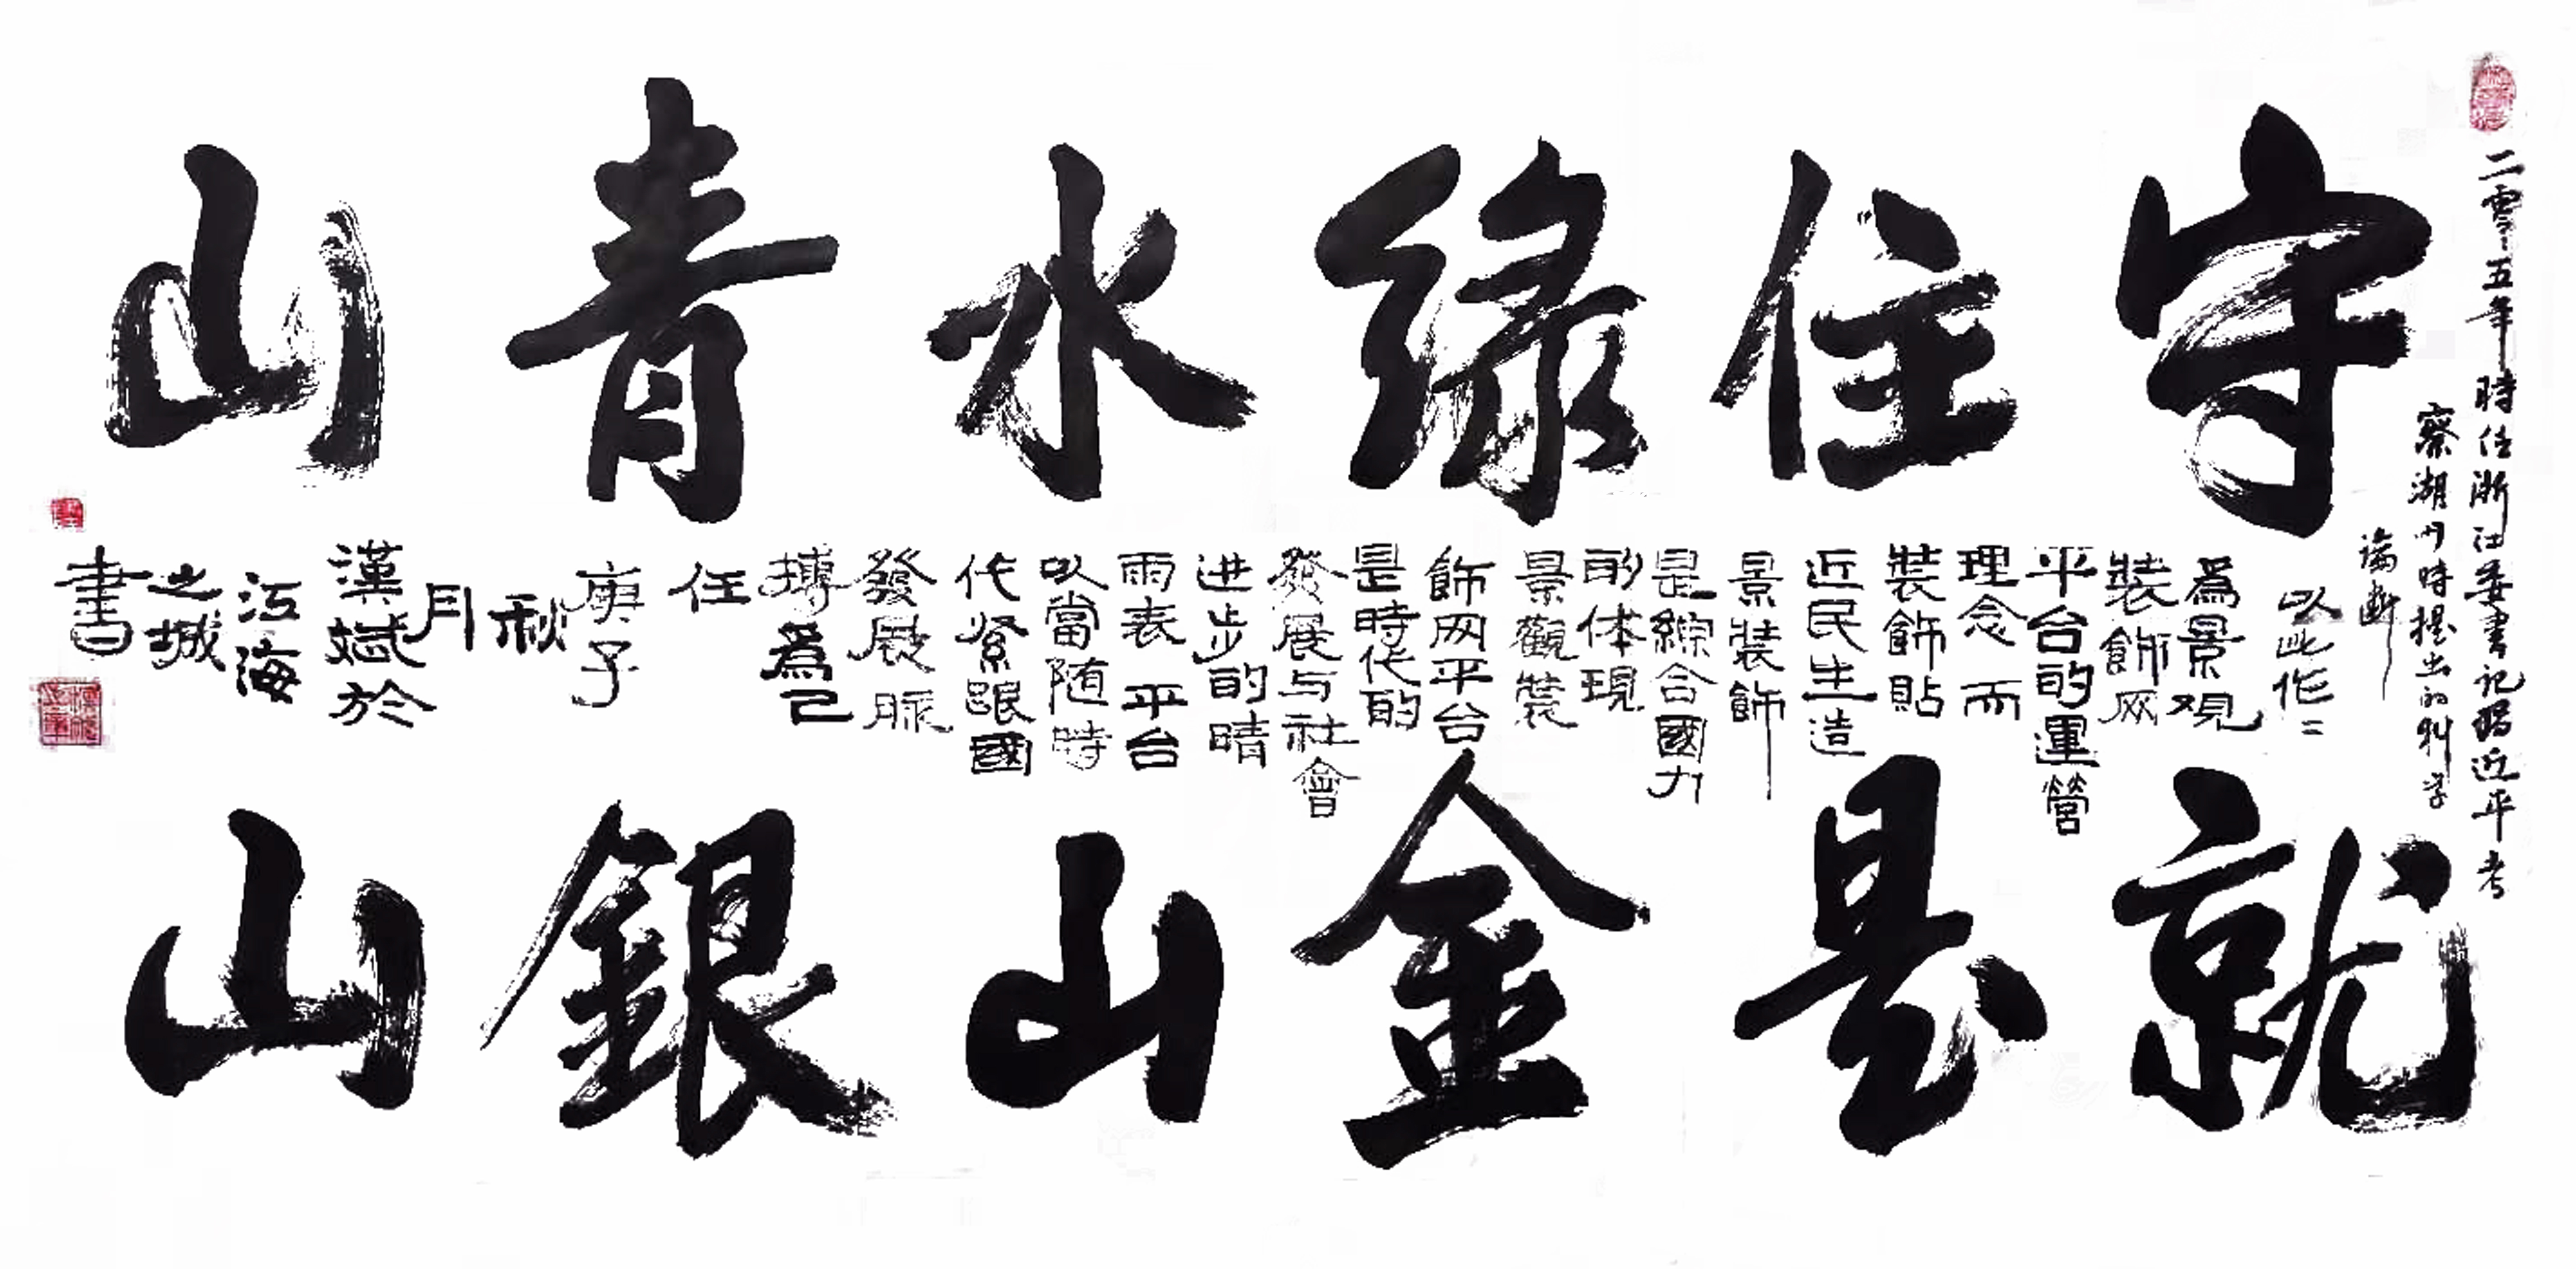 中国大众文化学会名人书画艺术发展委员会——陆汉斌